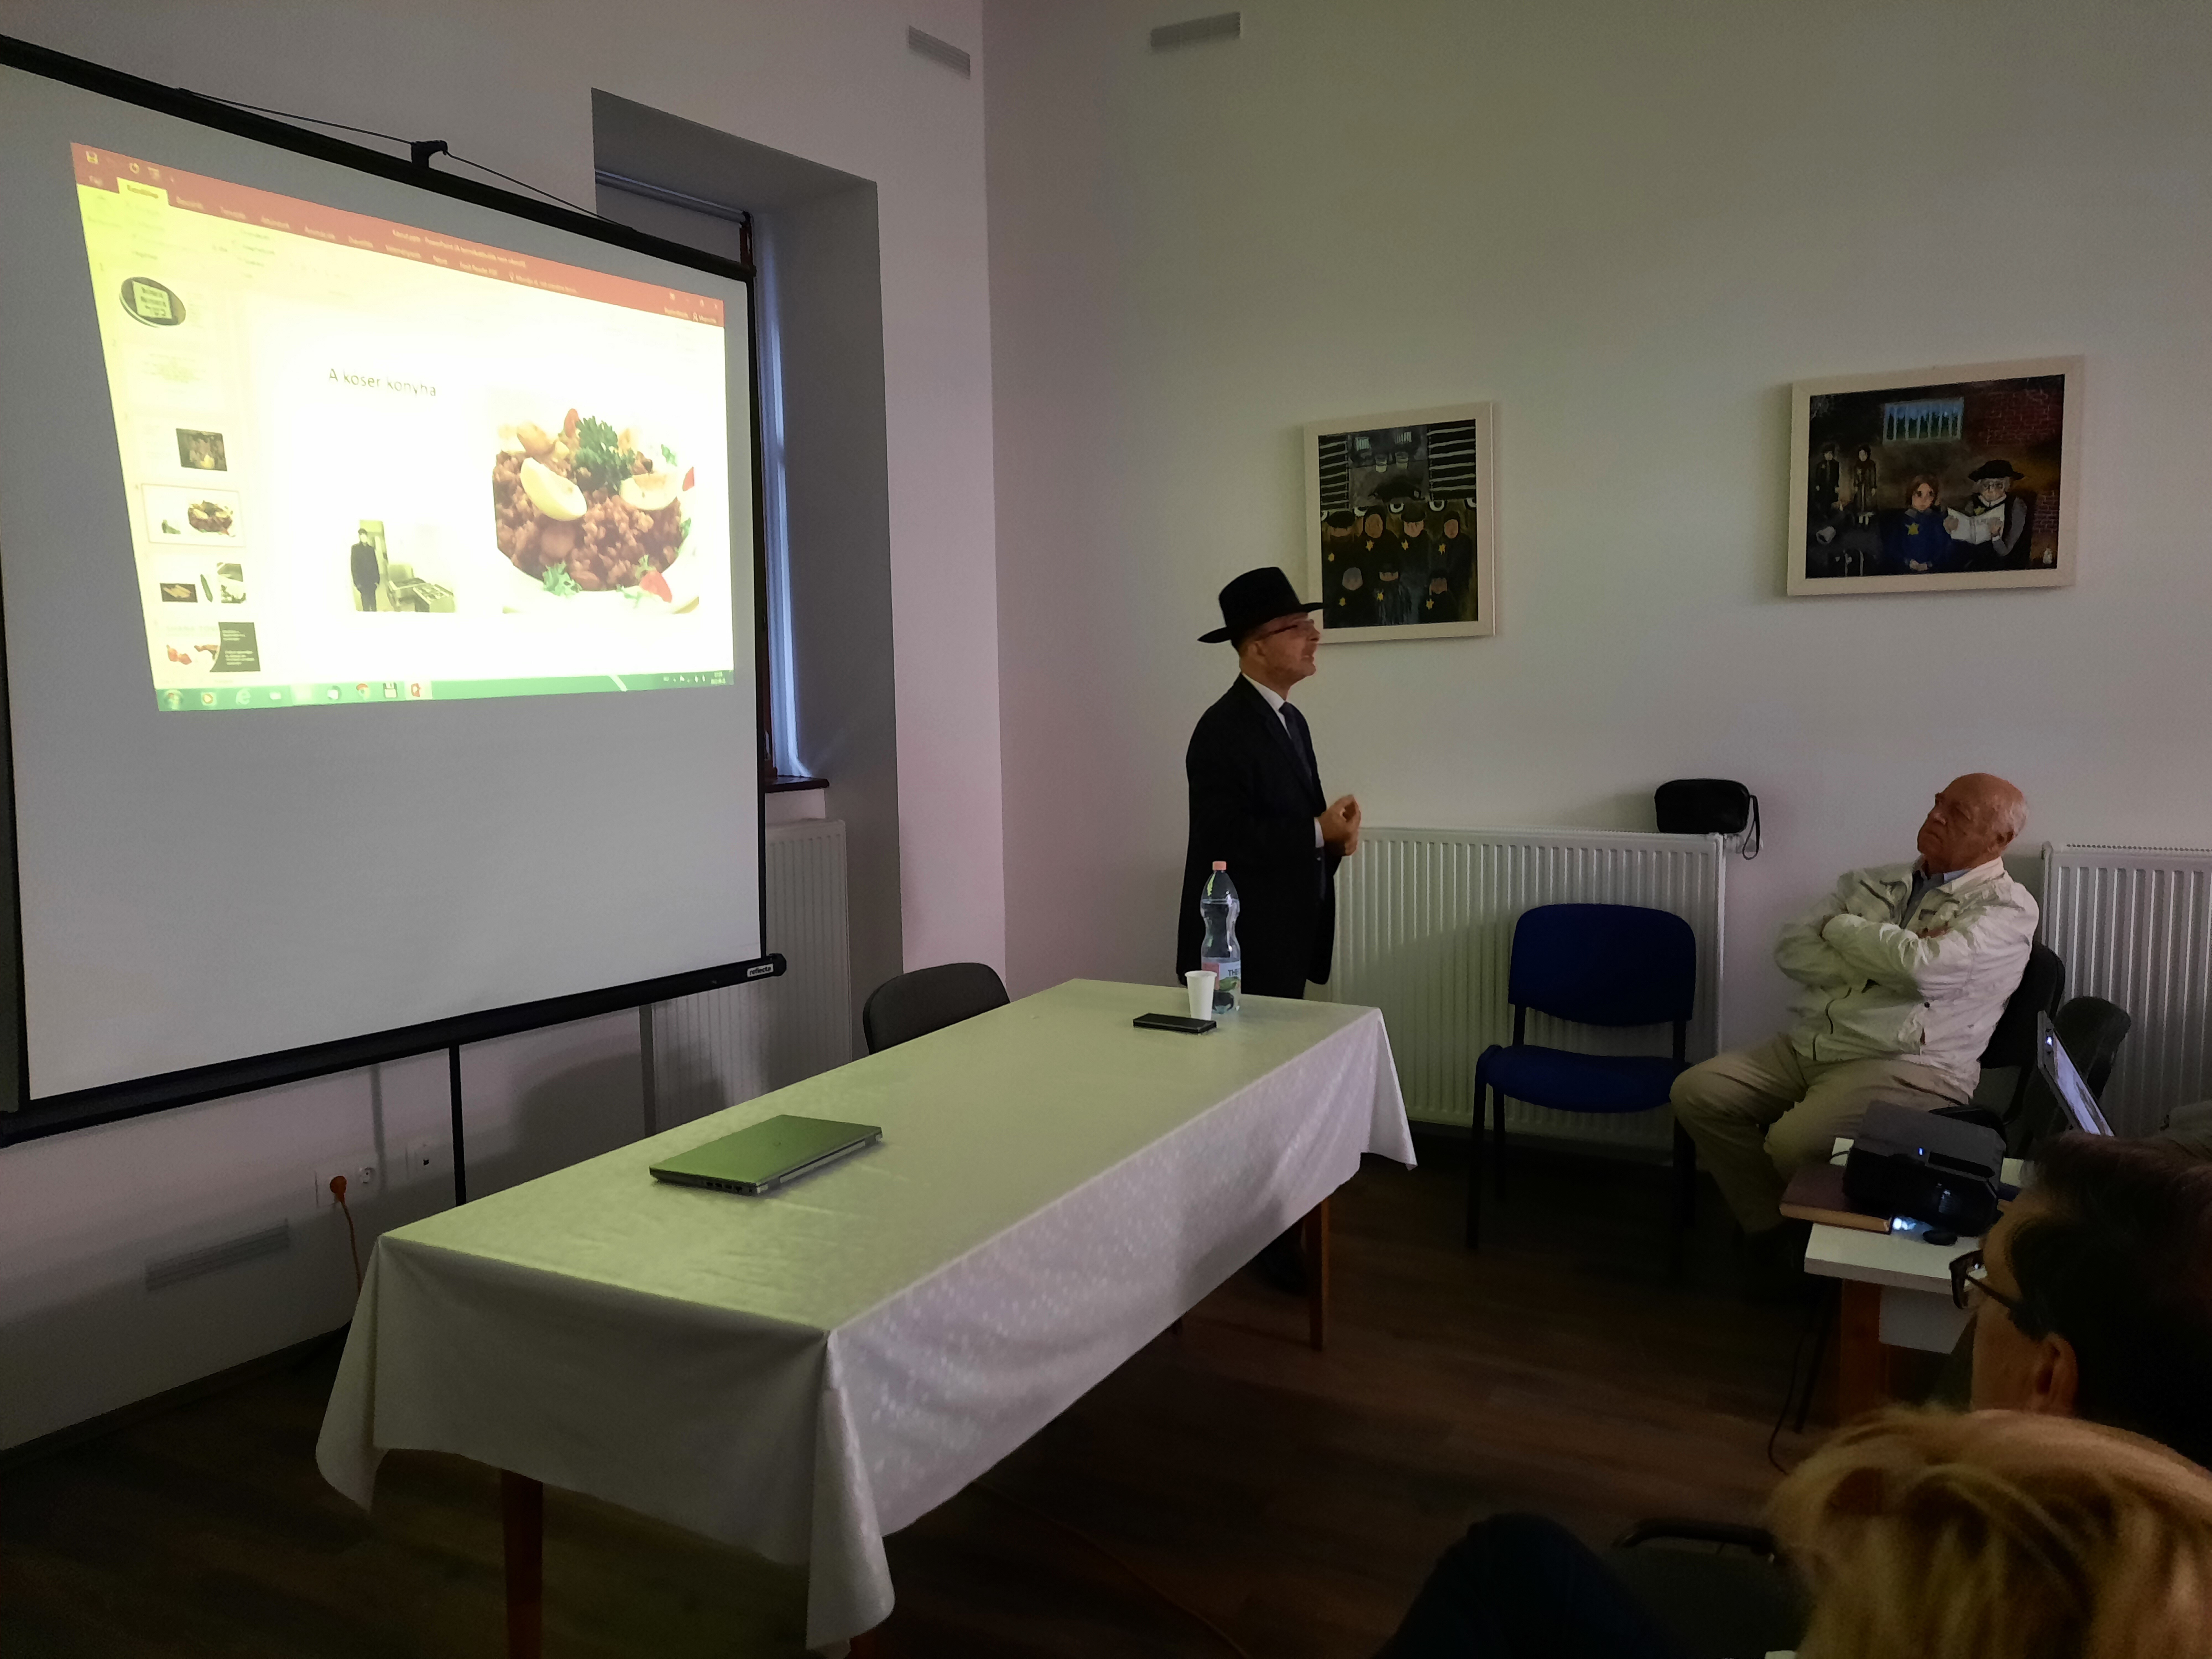 Teltházas előadás – Markovics Zsolt főrabbi a kóserság és a zsidóság törvényeiről beszélt – ez volt a múzeum baráti körének első rendezvénye